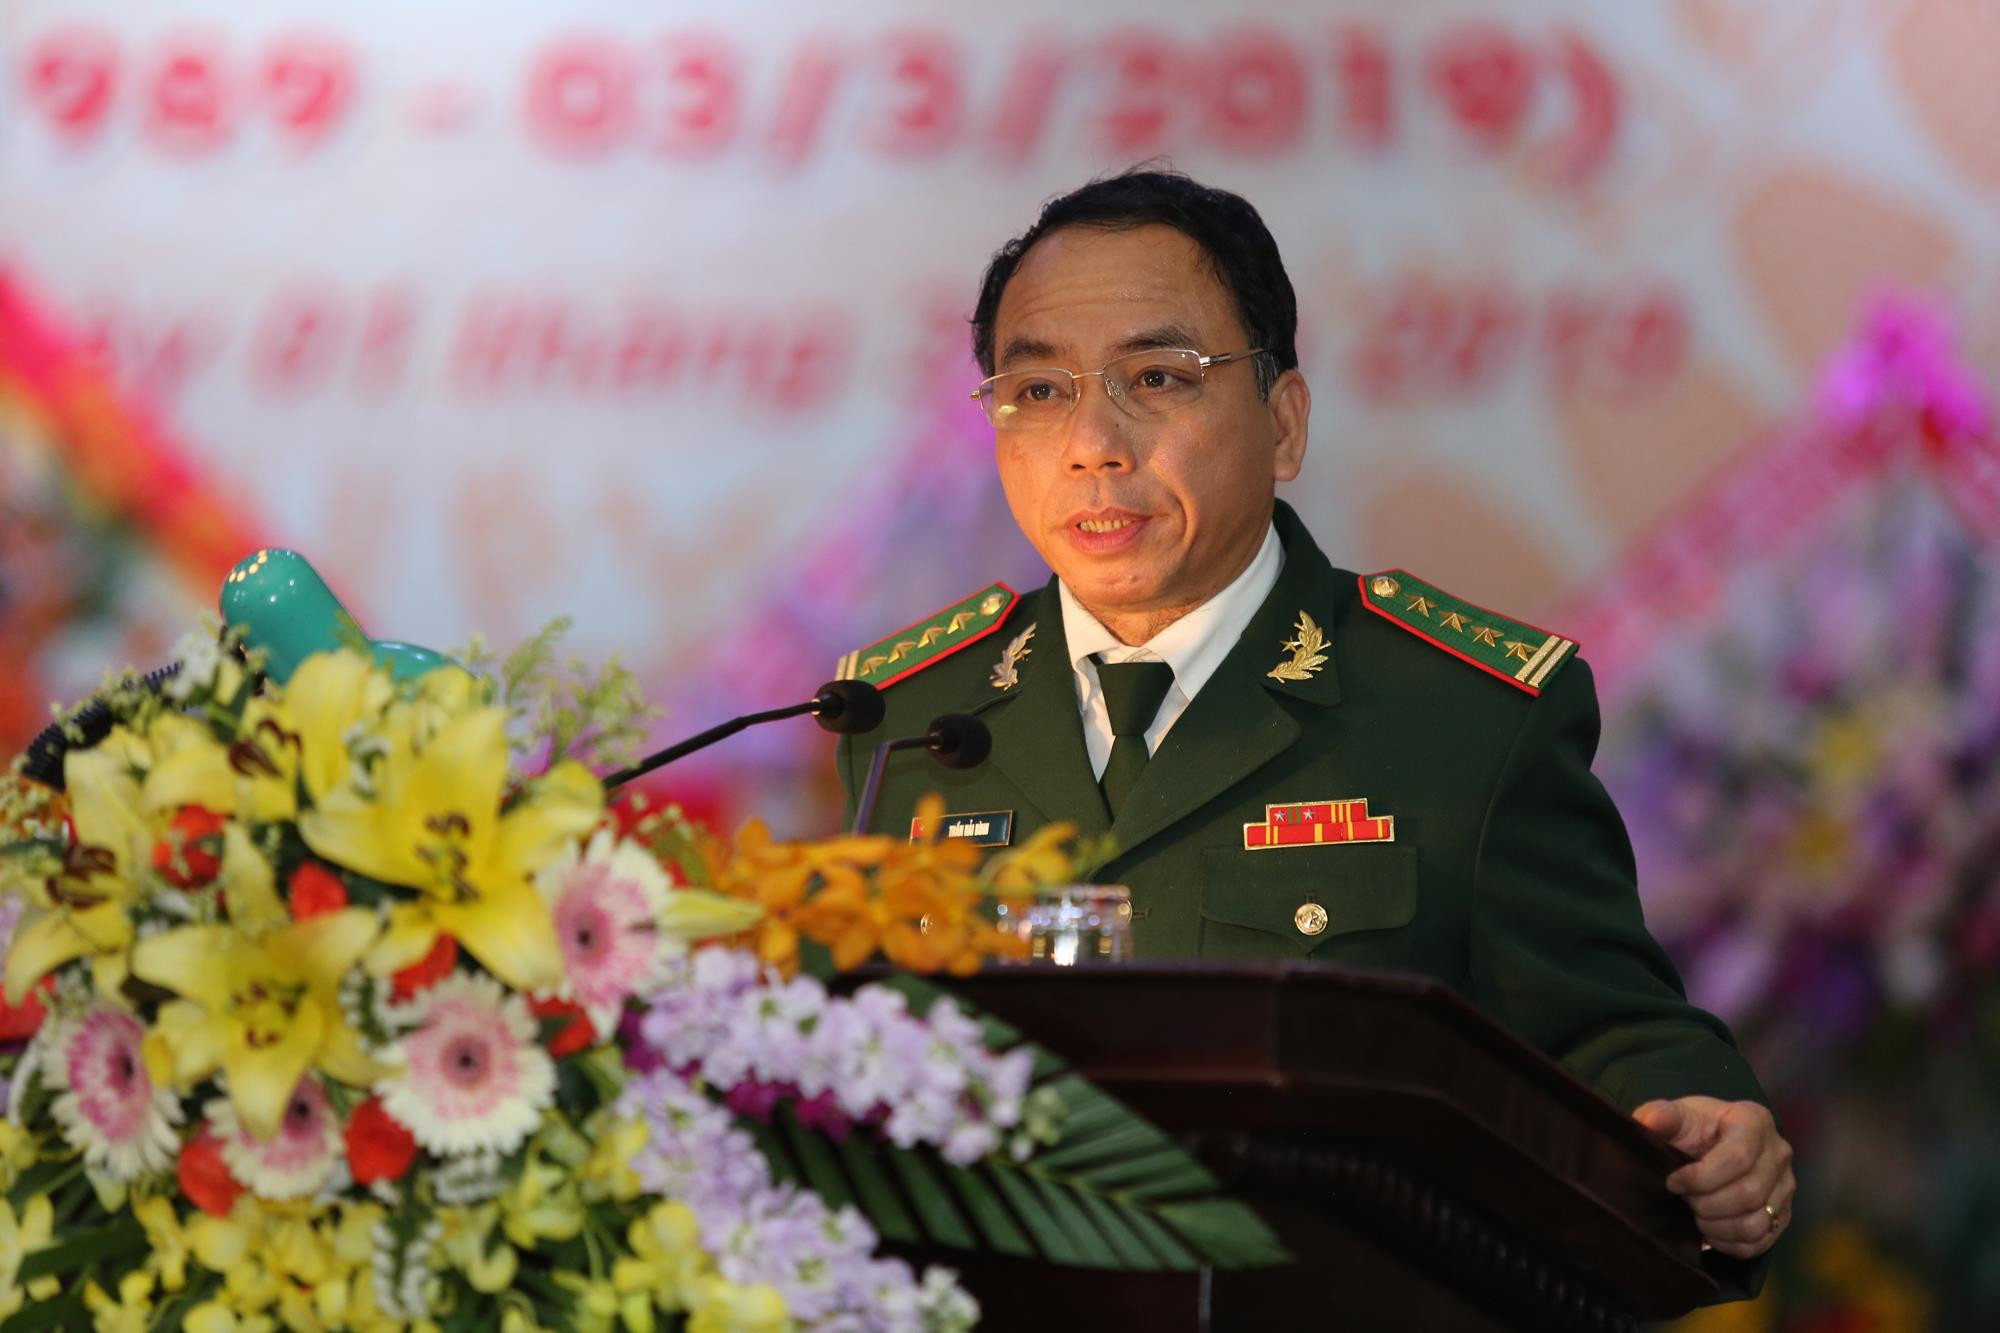 Đại tá Trần Hải Bình – Chỉ huy trưởng BĐBP tỉnh thay mặt cán bộ chiến sỹ cảm ơn những phát biểu chỉ đạo, chia sẻ của các đồng chí lãnh đạo tỉnh, các đại biểu và hứa tiếp thu, phấn đấu tốt hơn nữa hoàn thành xuất sắc nhiệm vụ được giao.